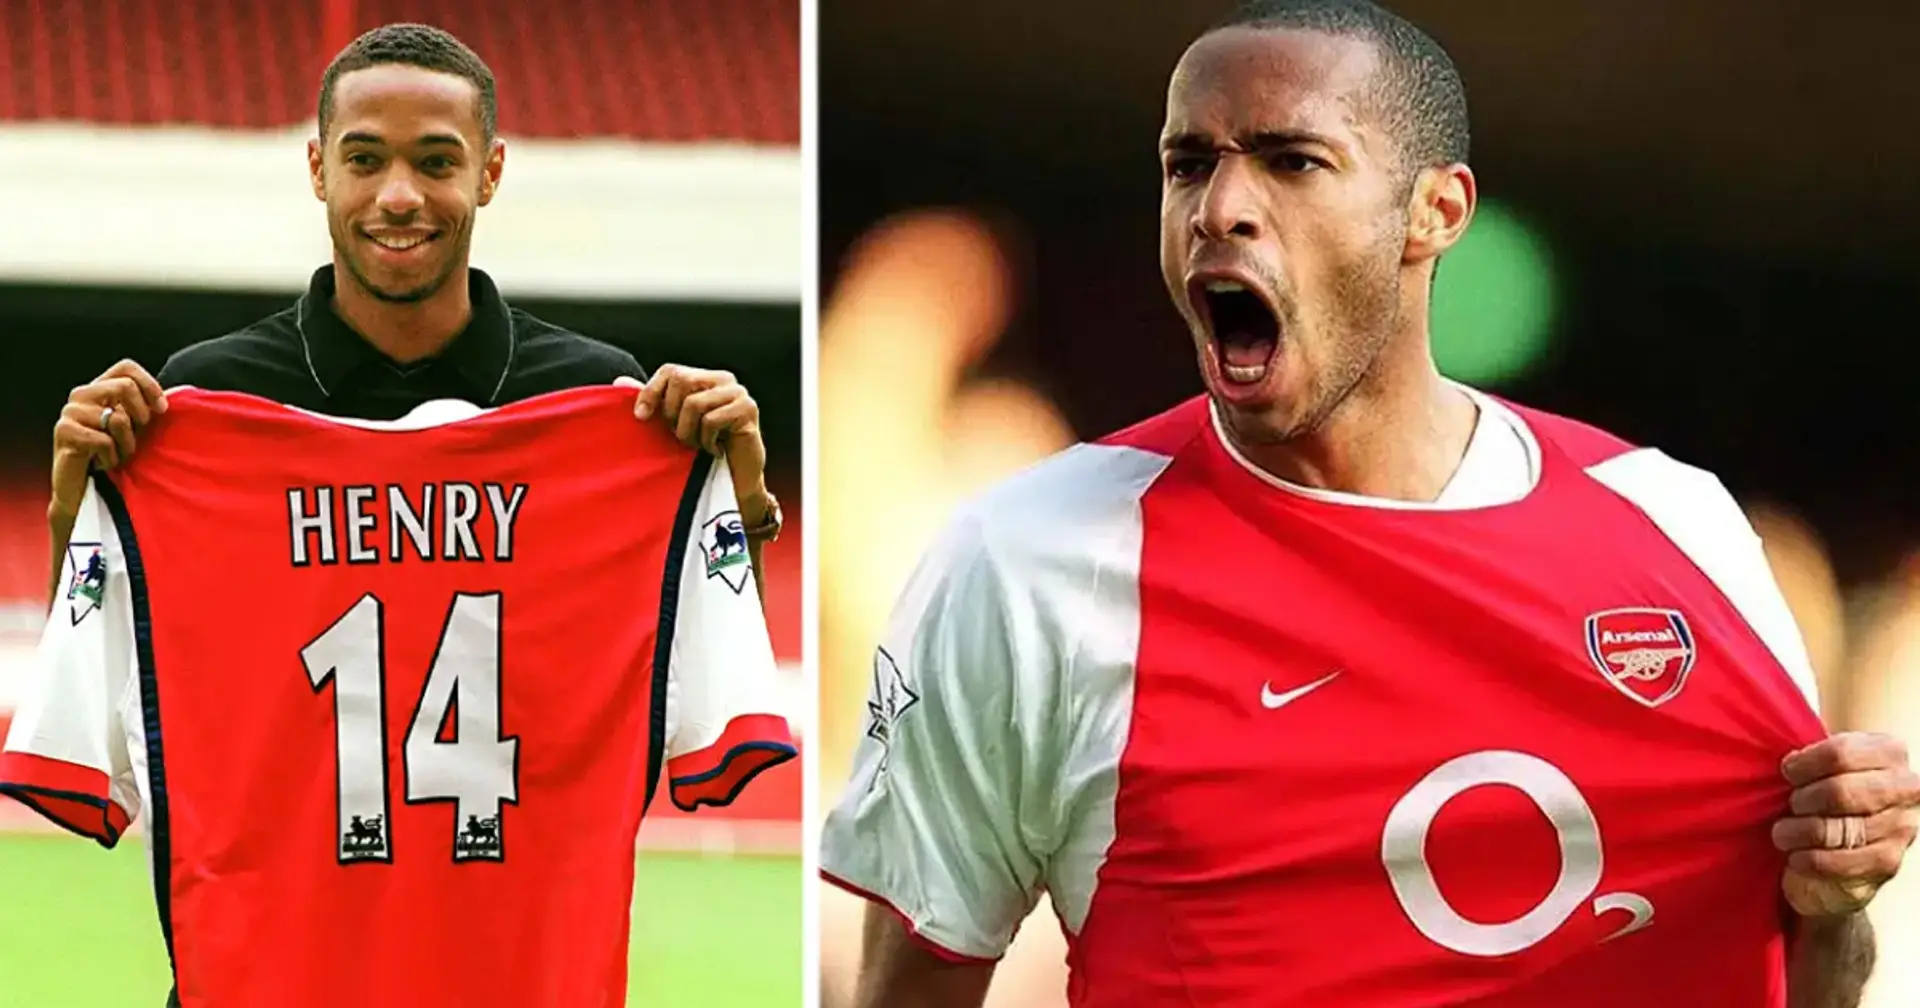 "Le 14 n'est pas mon numéro" : On vous explique pourquoi Henry a choisi le n°14 à Arsenal